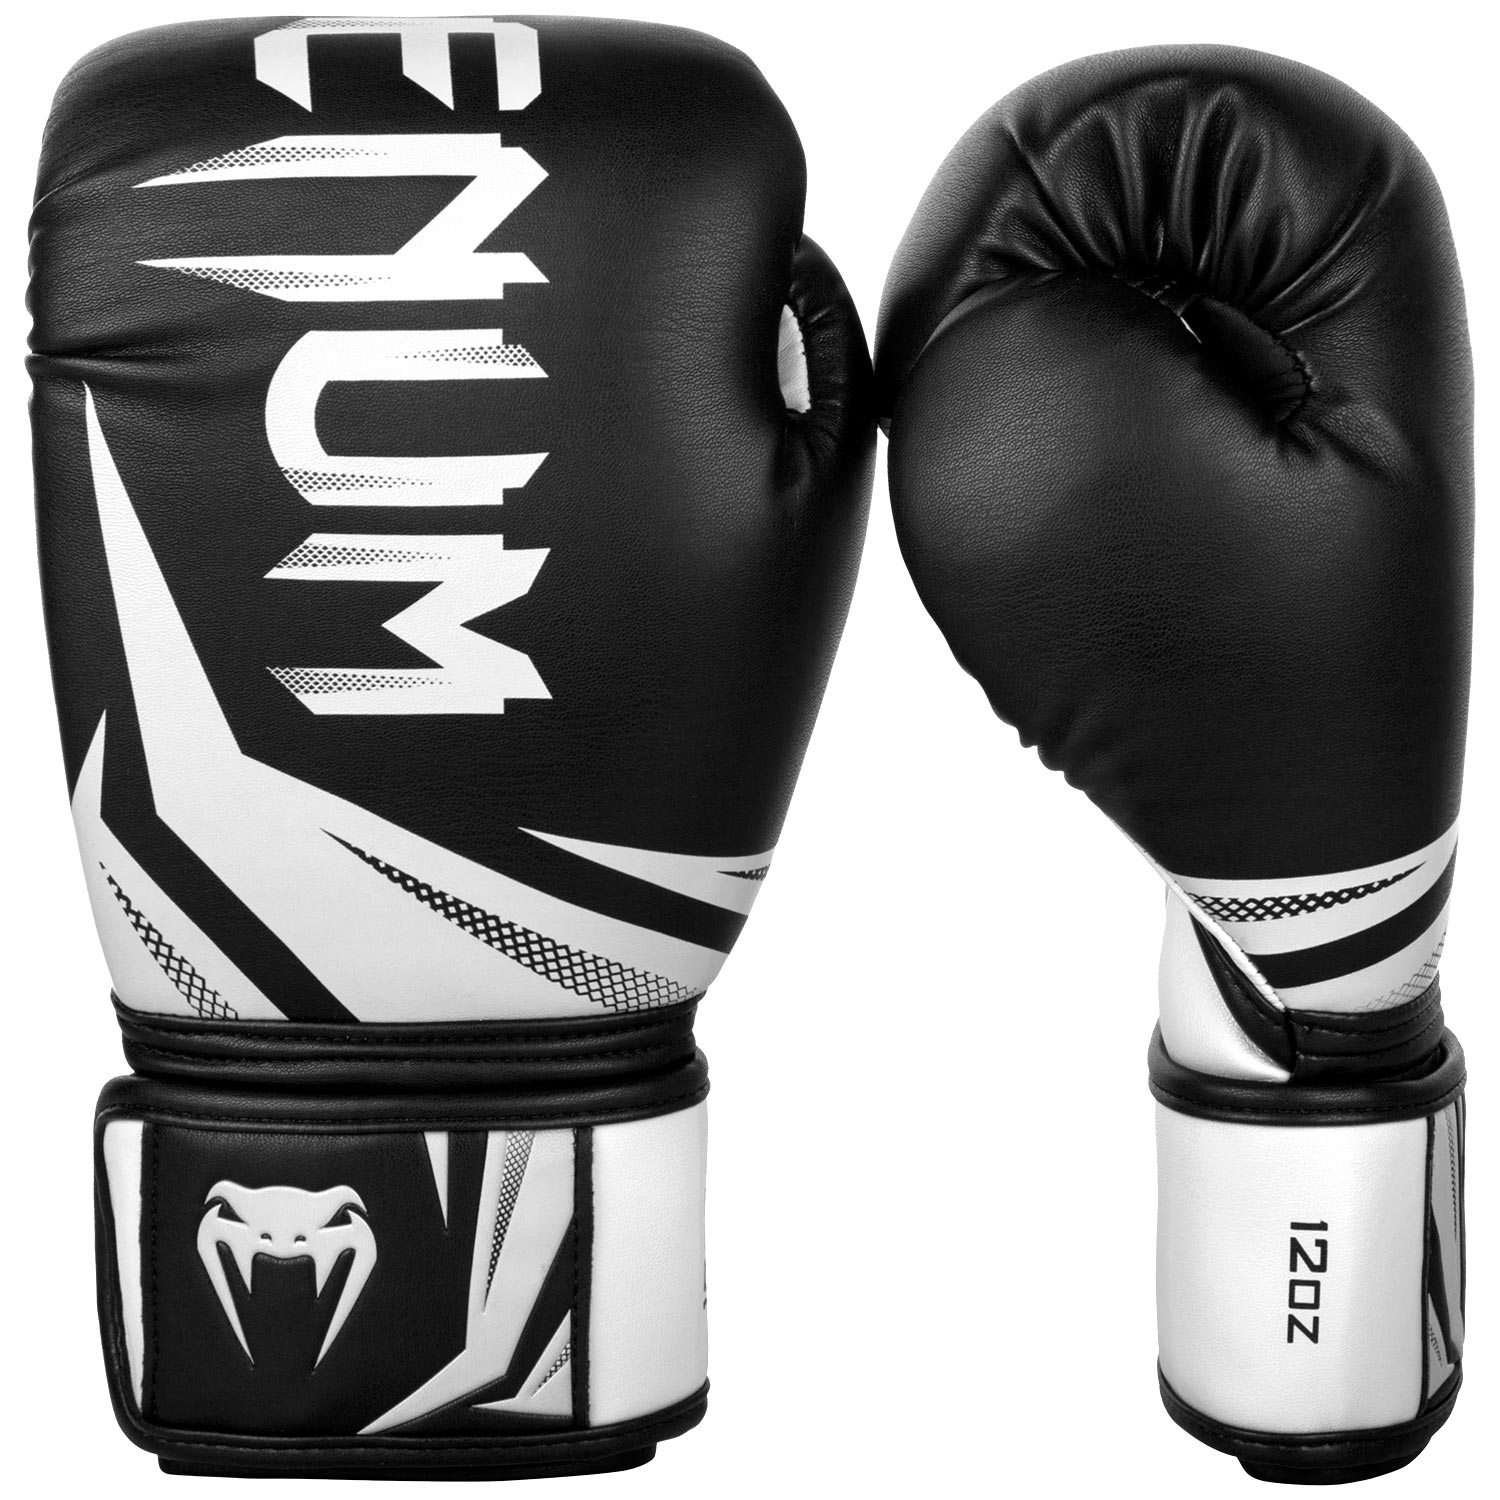 Boxerské rukavice Challenger 3.0 černé/bílé VENUM vel. 10 oz